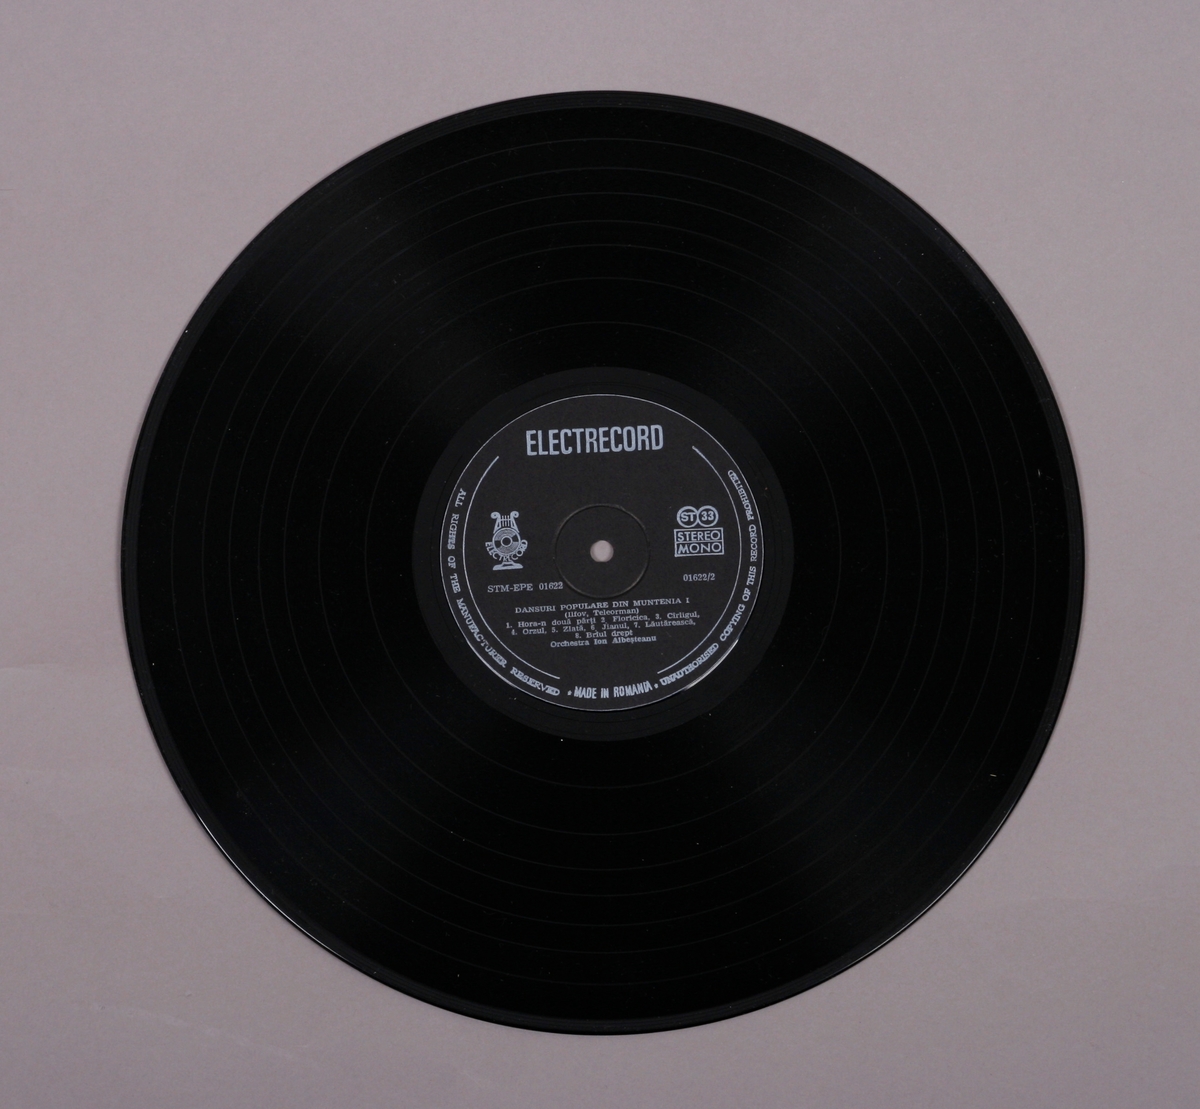 Grammofonplate i svart vinyl og plateomslag i papp. Teksthefte av papir. Plata ligger i en plastlomme.